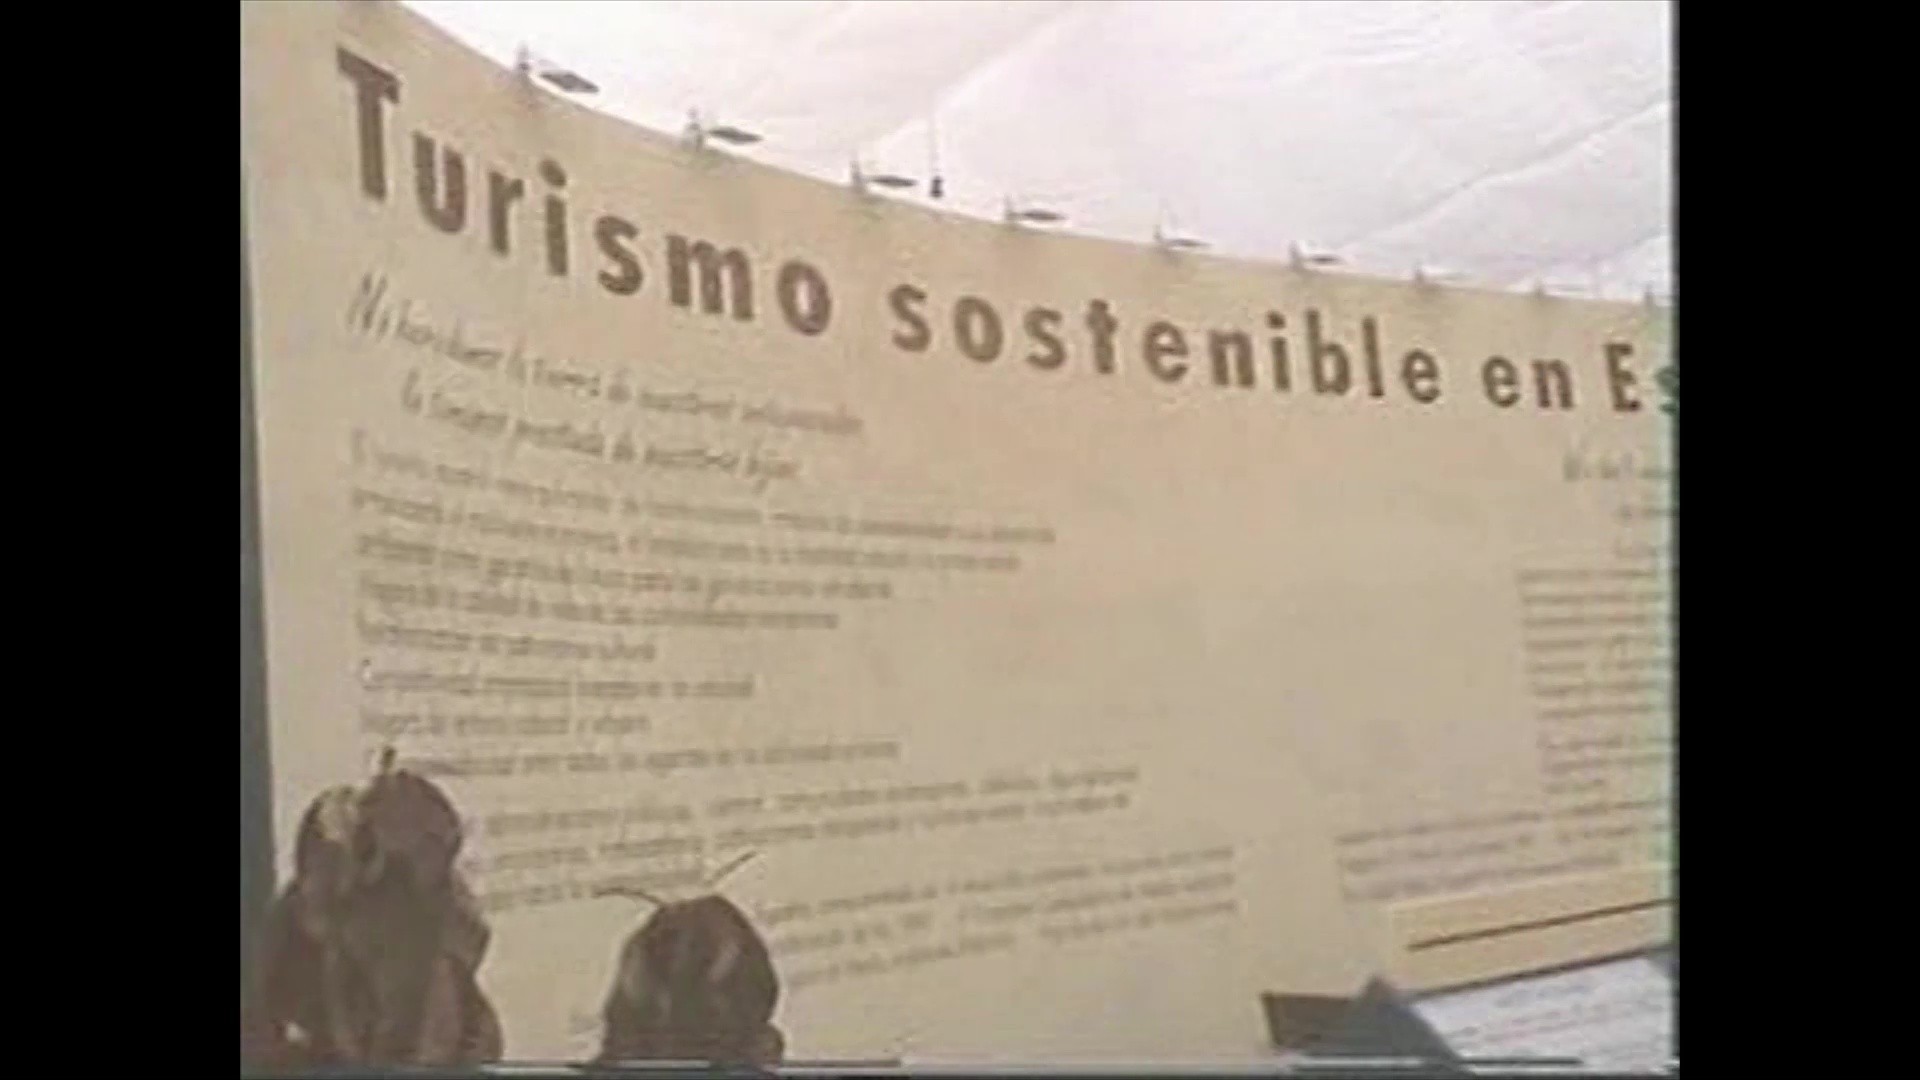 Turismo sostenible (1995)